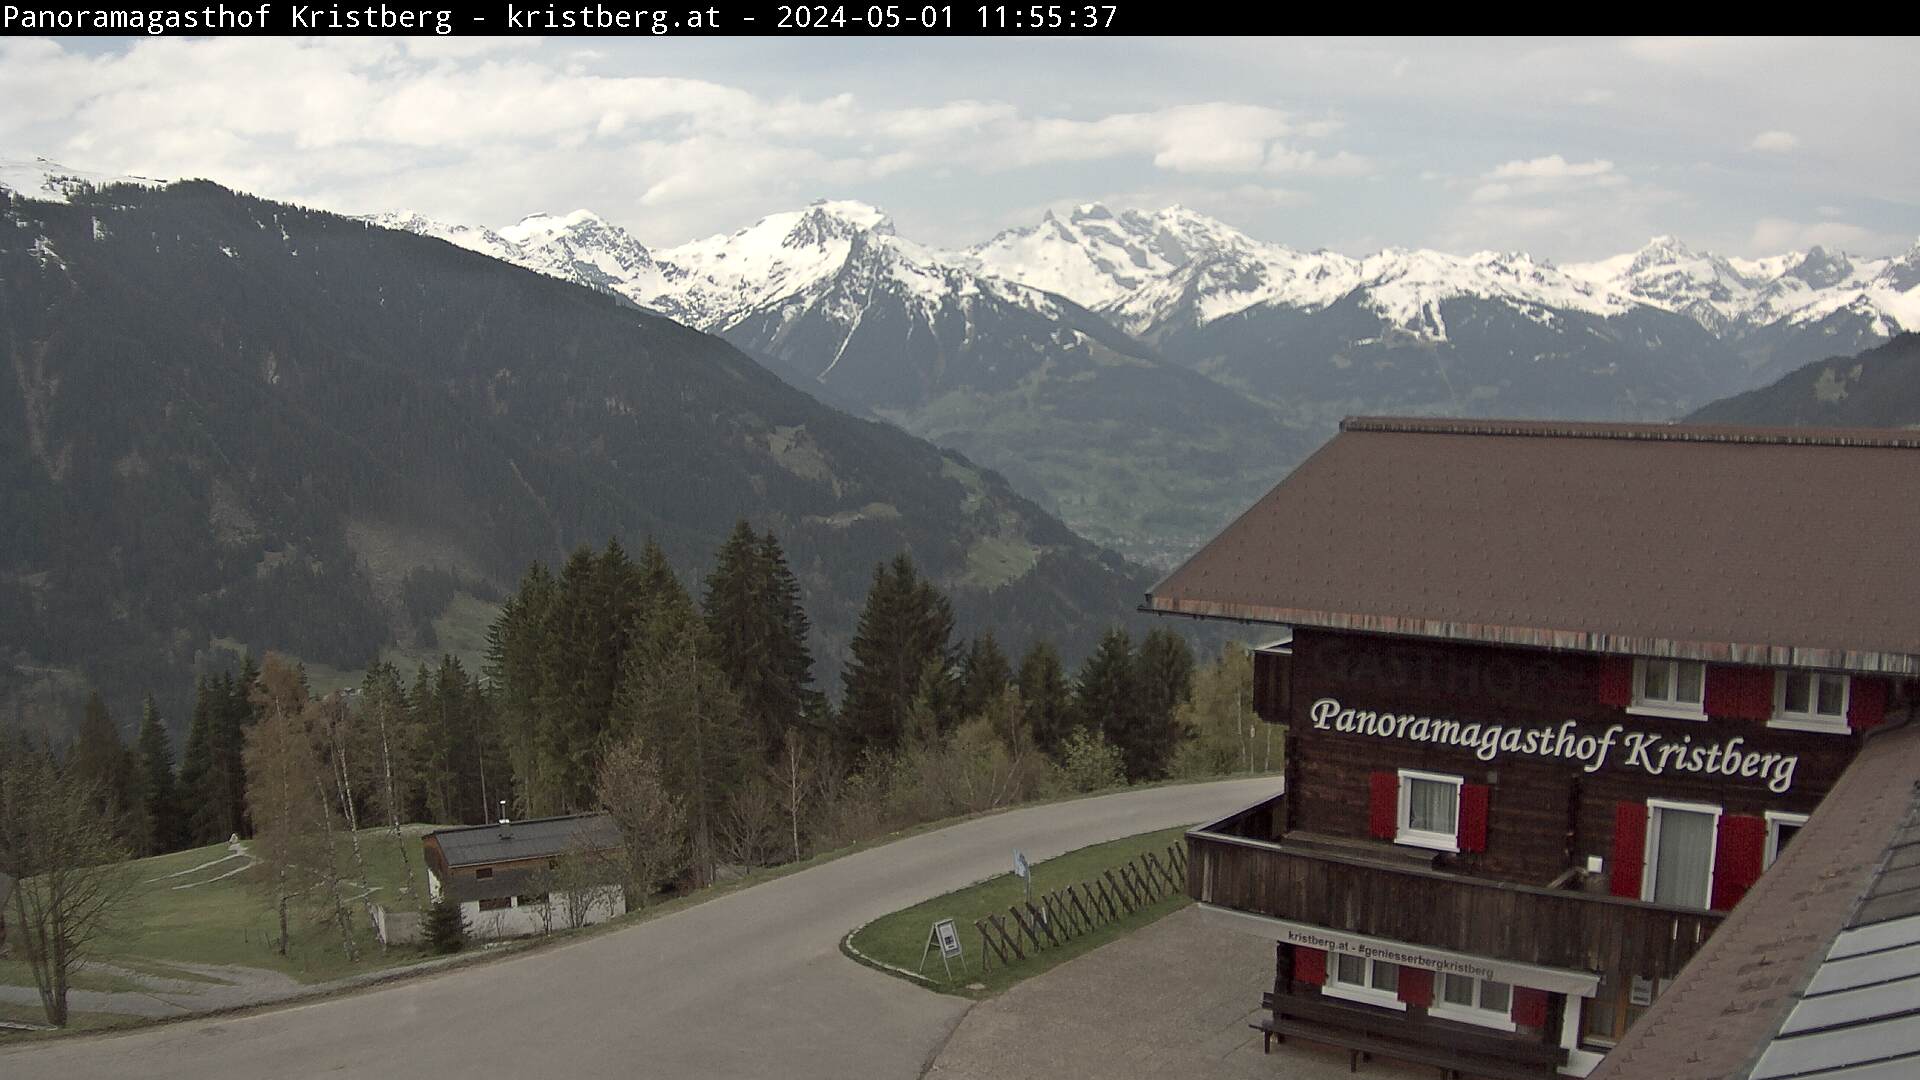 Die Webcam mit diesem Livebild zeigt den Panoramagasthof Kristberg mit Blick auf die Rätikongebirgsgruppe, Schruns-Tschagguns und Golm